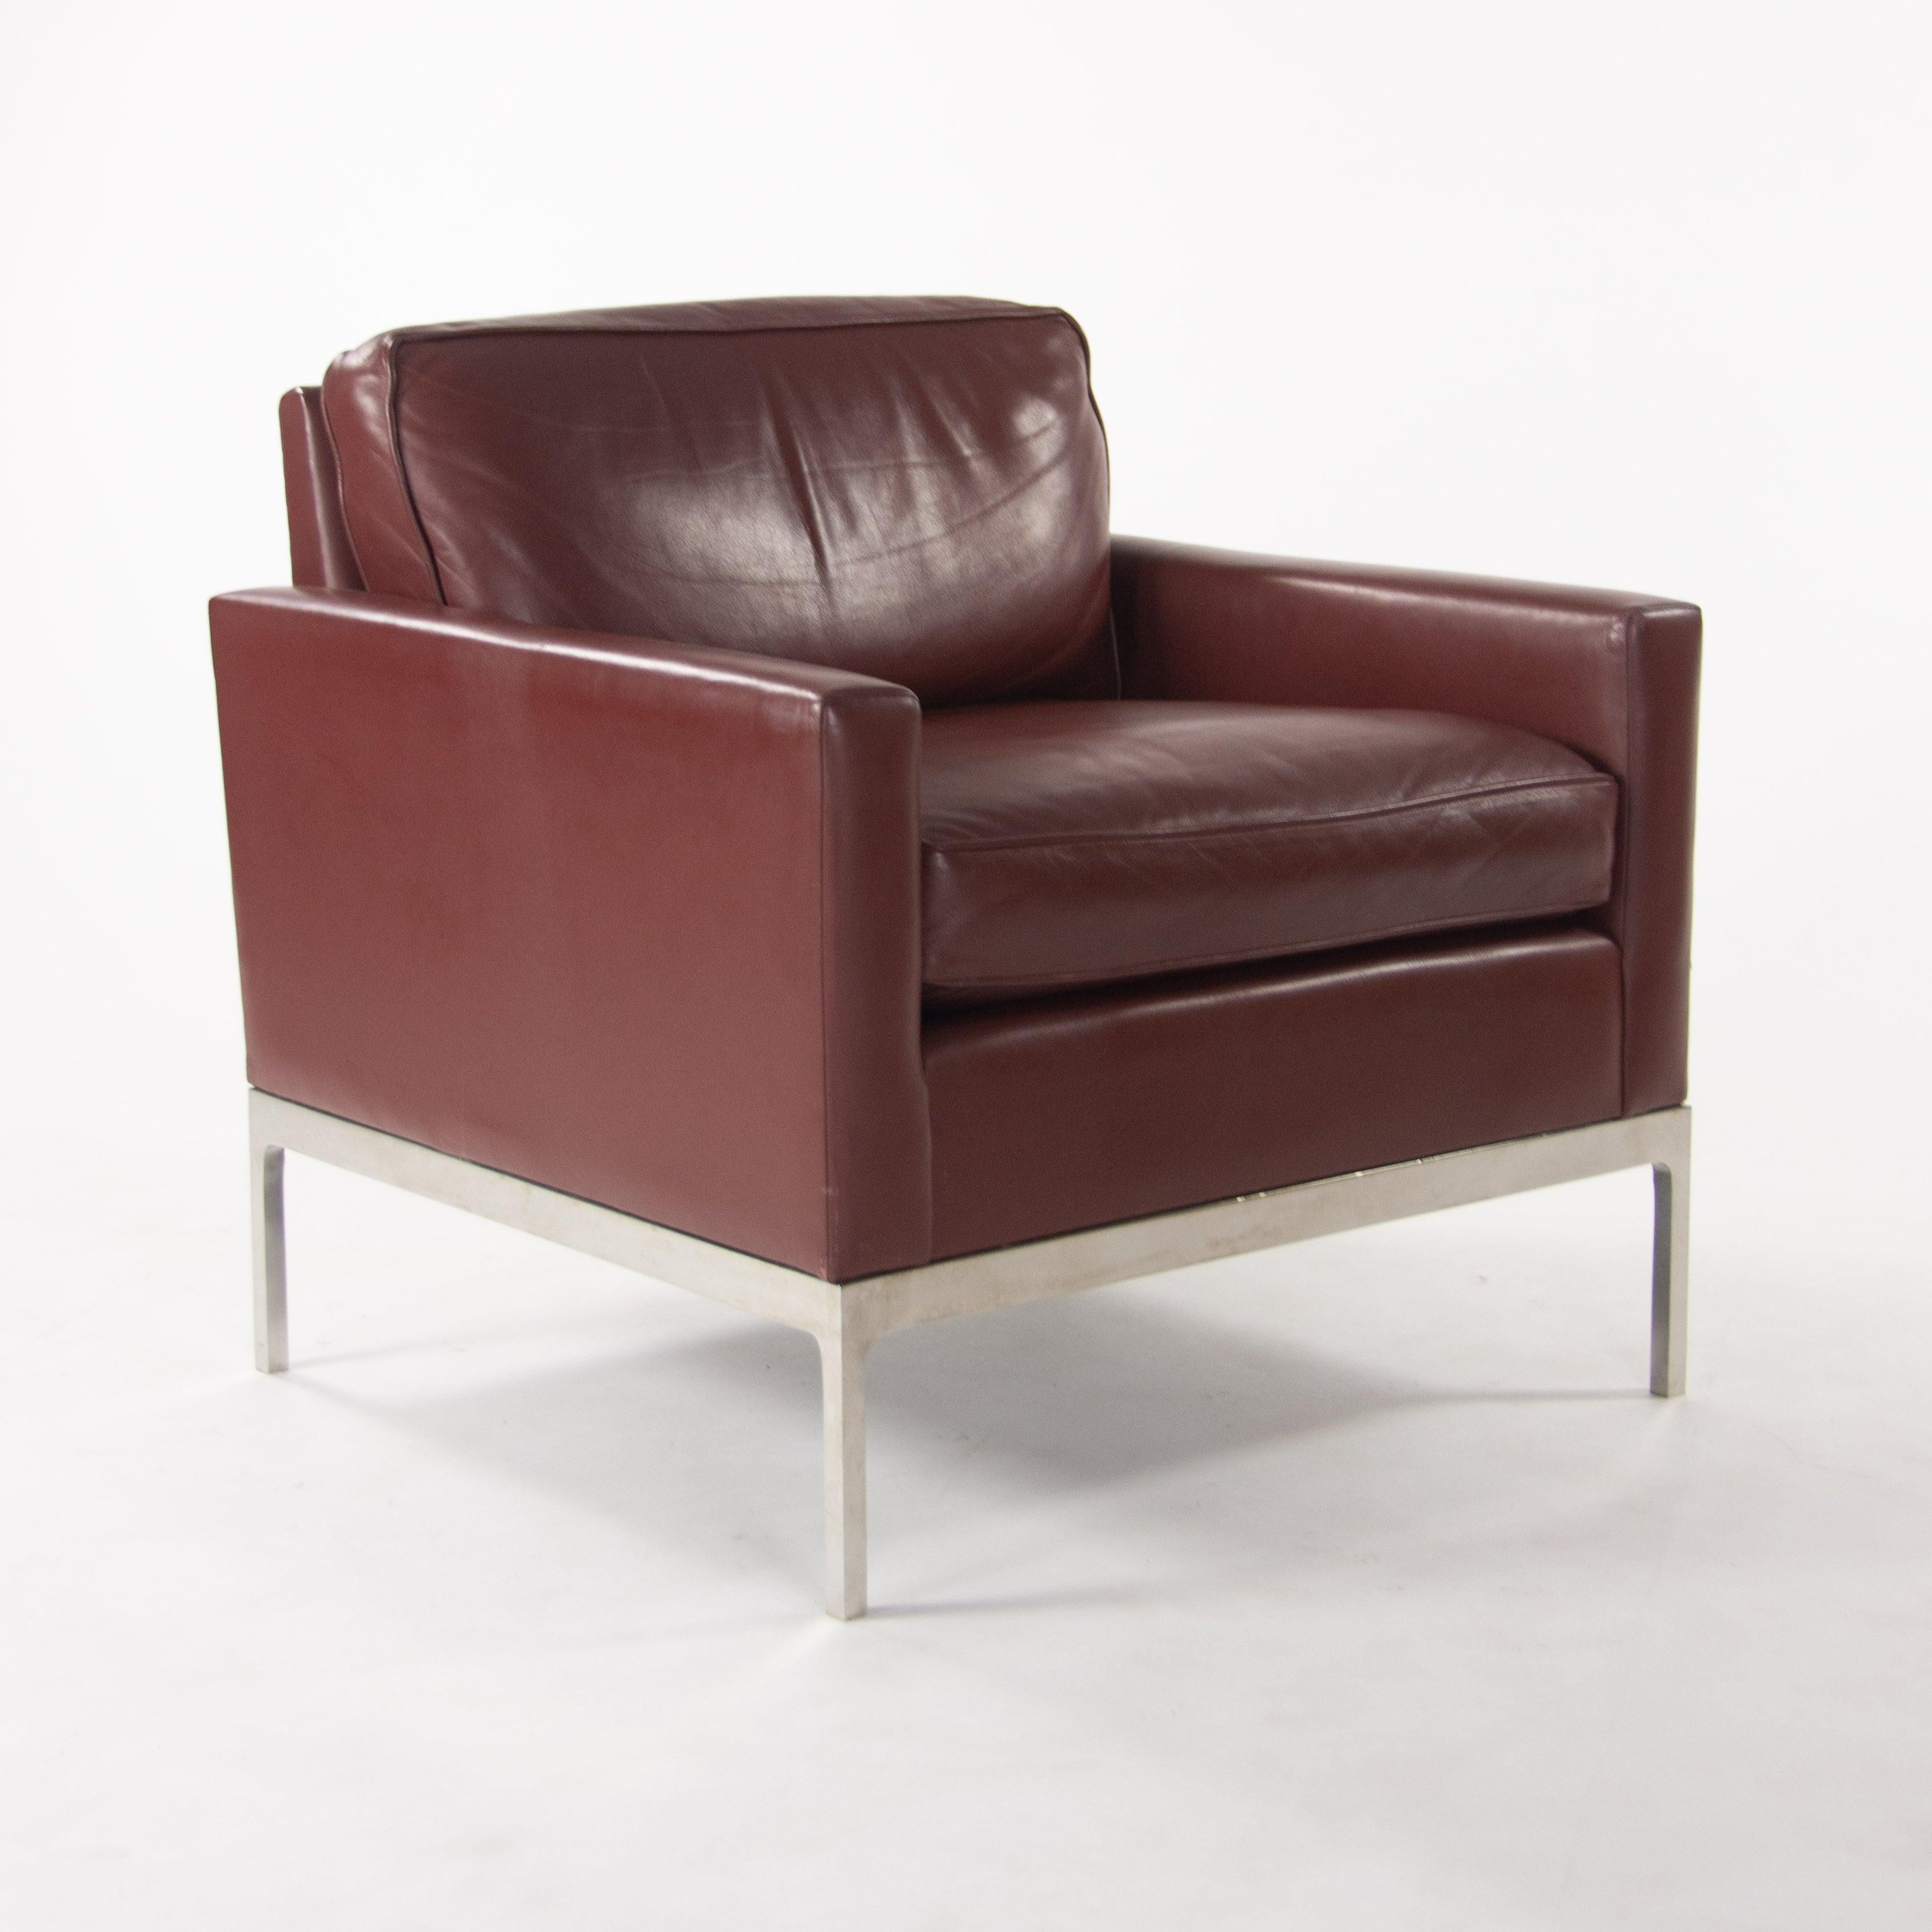 Nous proposons à la vente une chaise de salon originale en cuir rouge avec accoudoirs de Nicos Zographos. Cet exemple est entièrement recouvert de cuir, avec une base en acier inoxydable poli.  
Nicos Zographos et sa société (Zographos Designs ltd.)